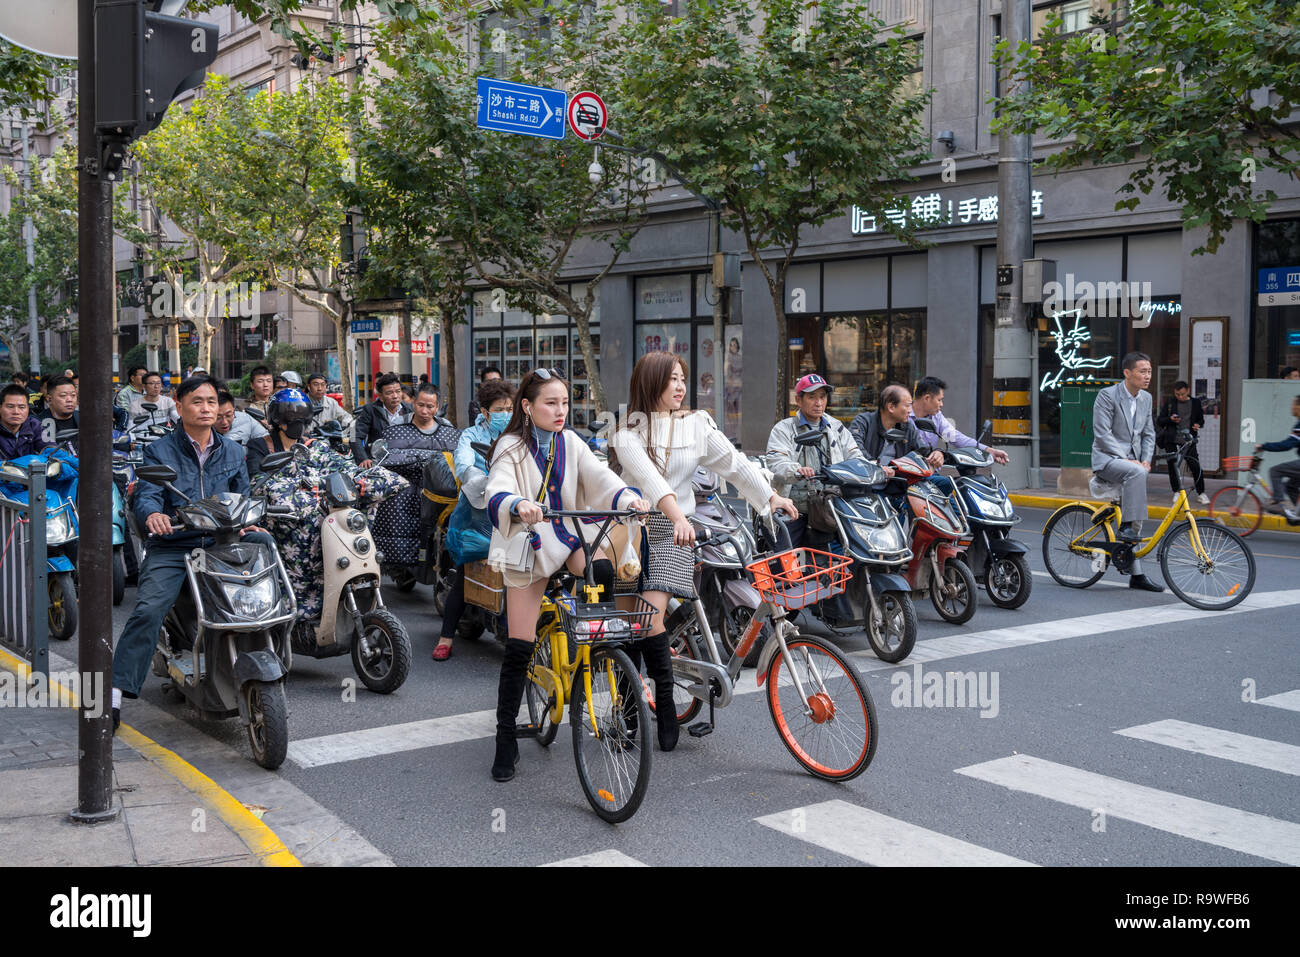 Randonnée à vélo sur route Sichuan à Shanghai Banque D'Images